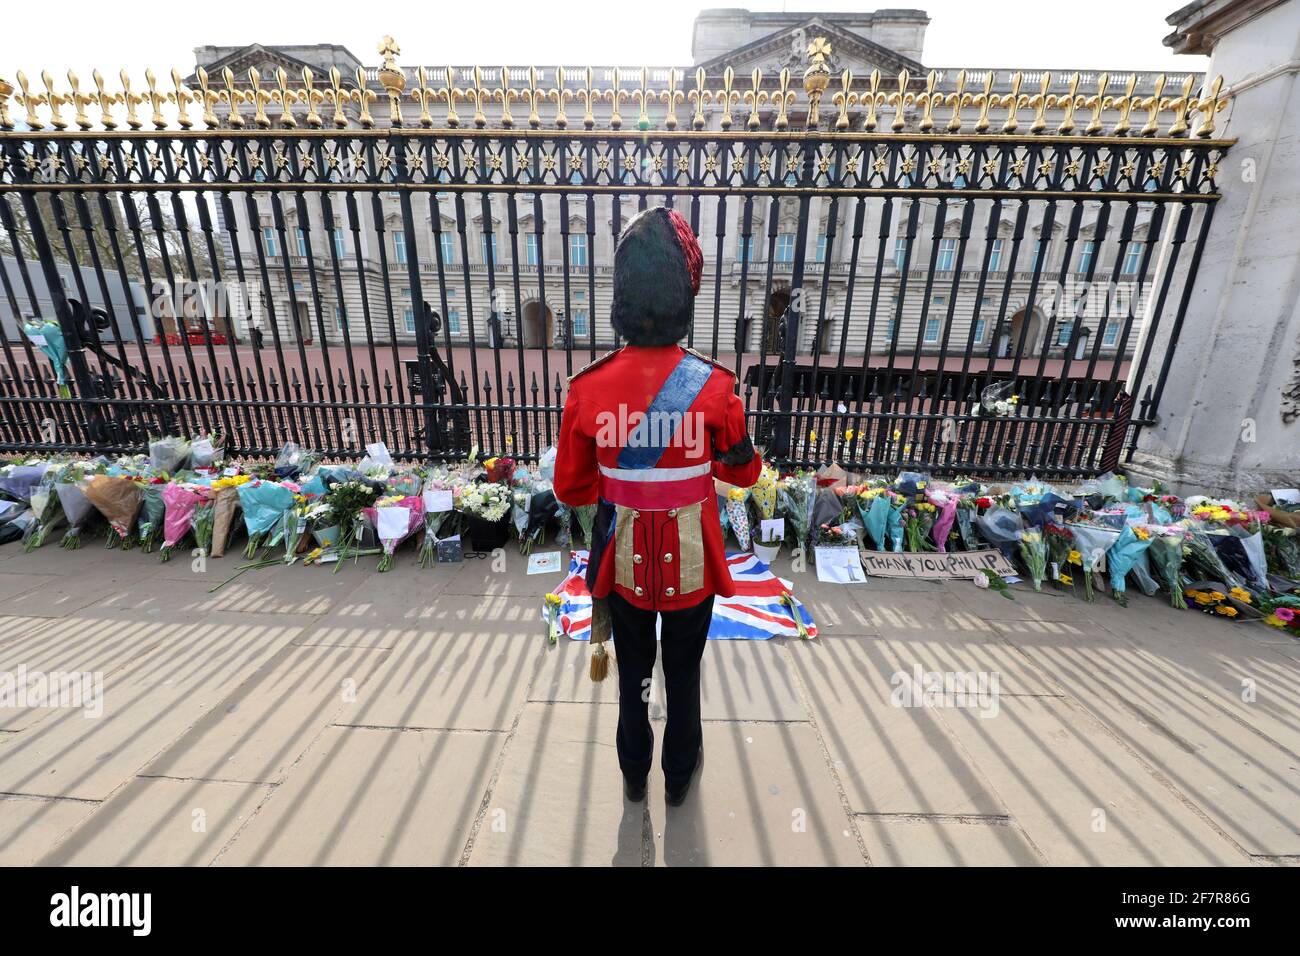 Londra, Regno Unito. 9 Apr 2021. Tributi floreali da parte della gente a Buckingham Palace dopo l'annuncio della morte del principe Filippo di credito: Paul Brown/Alamy Live News Foto Stock